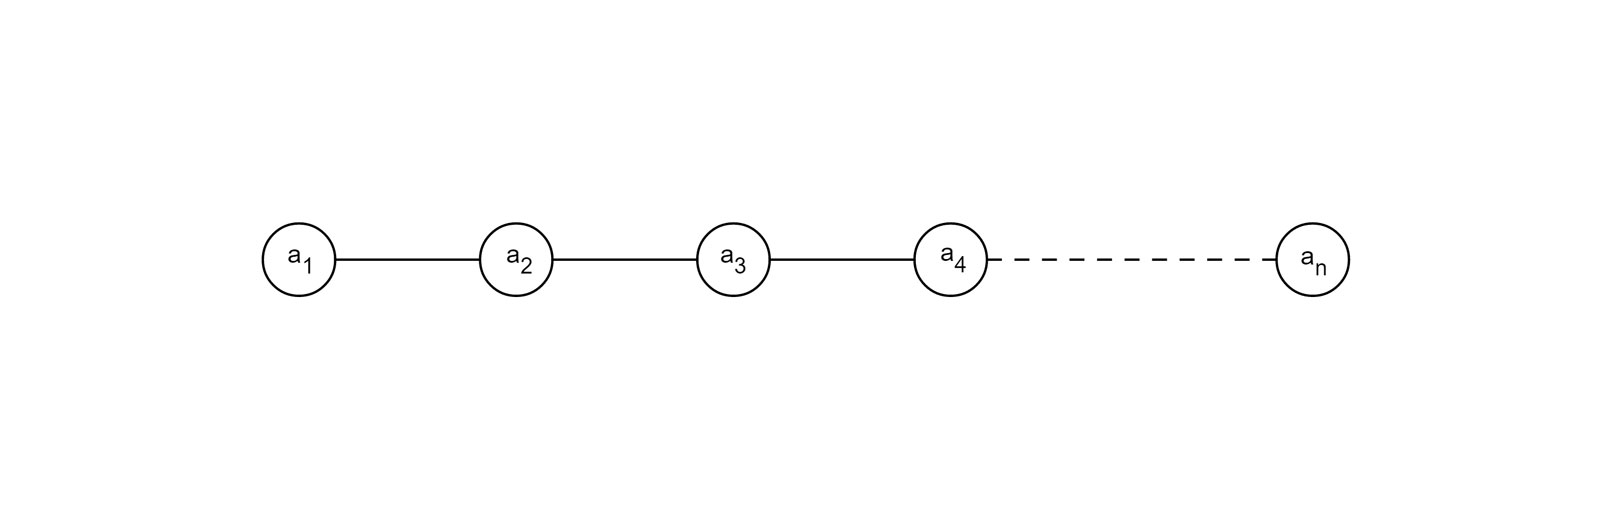 图 3-2 线性表示意图